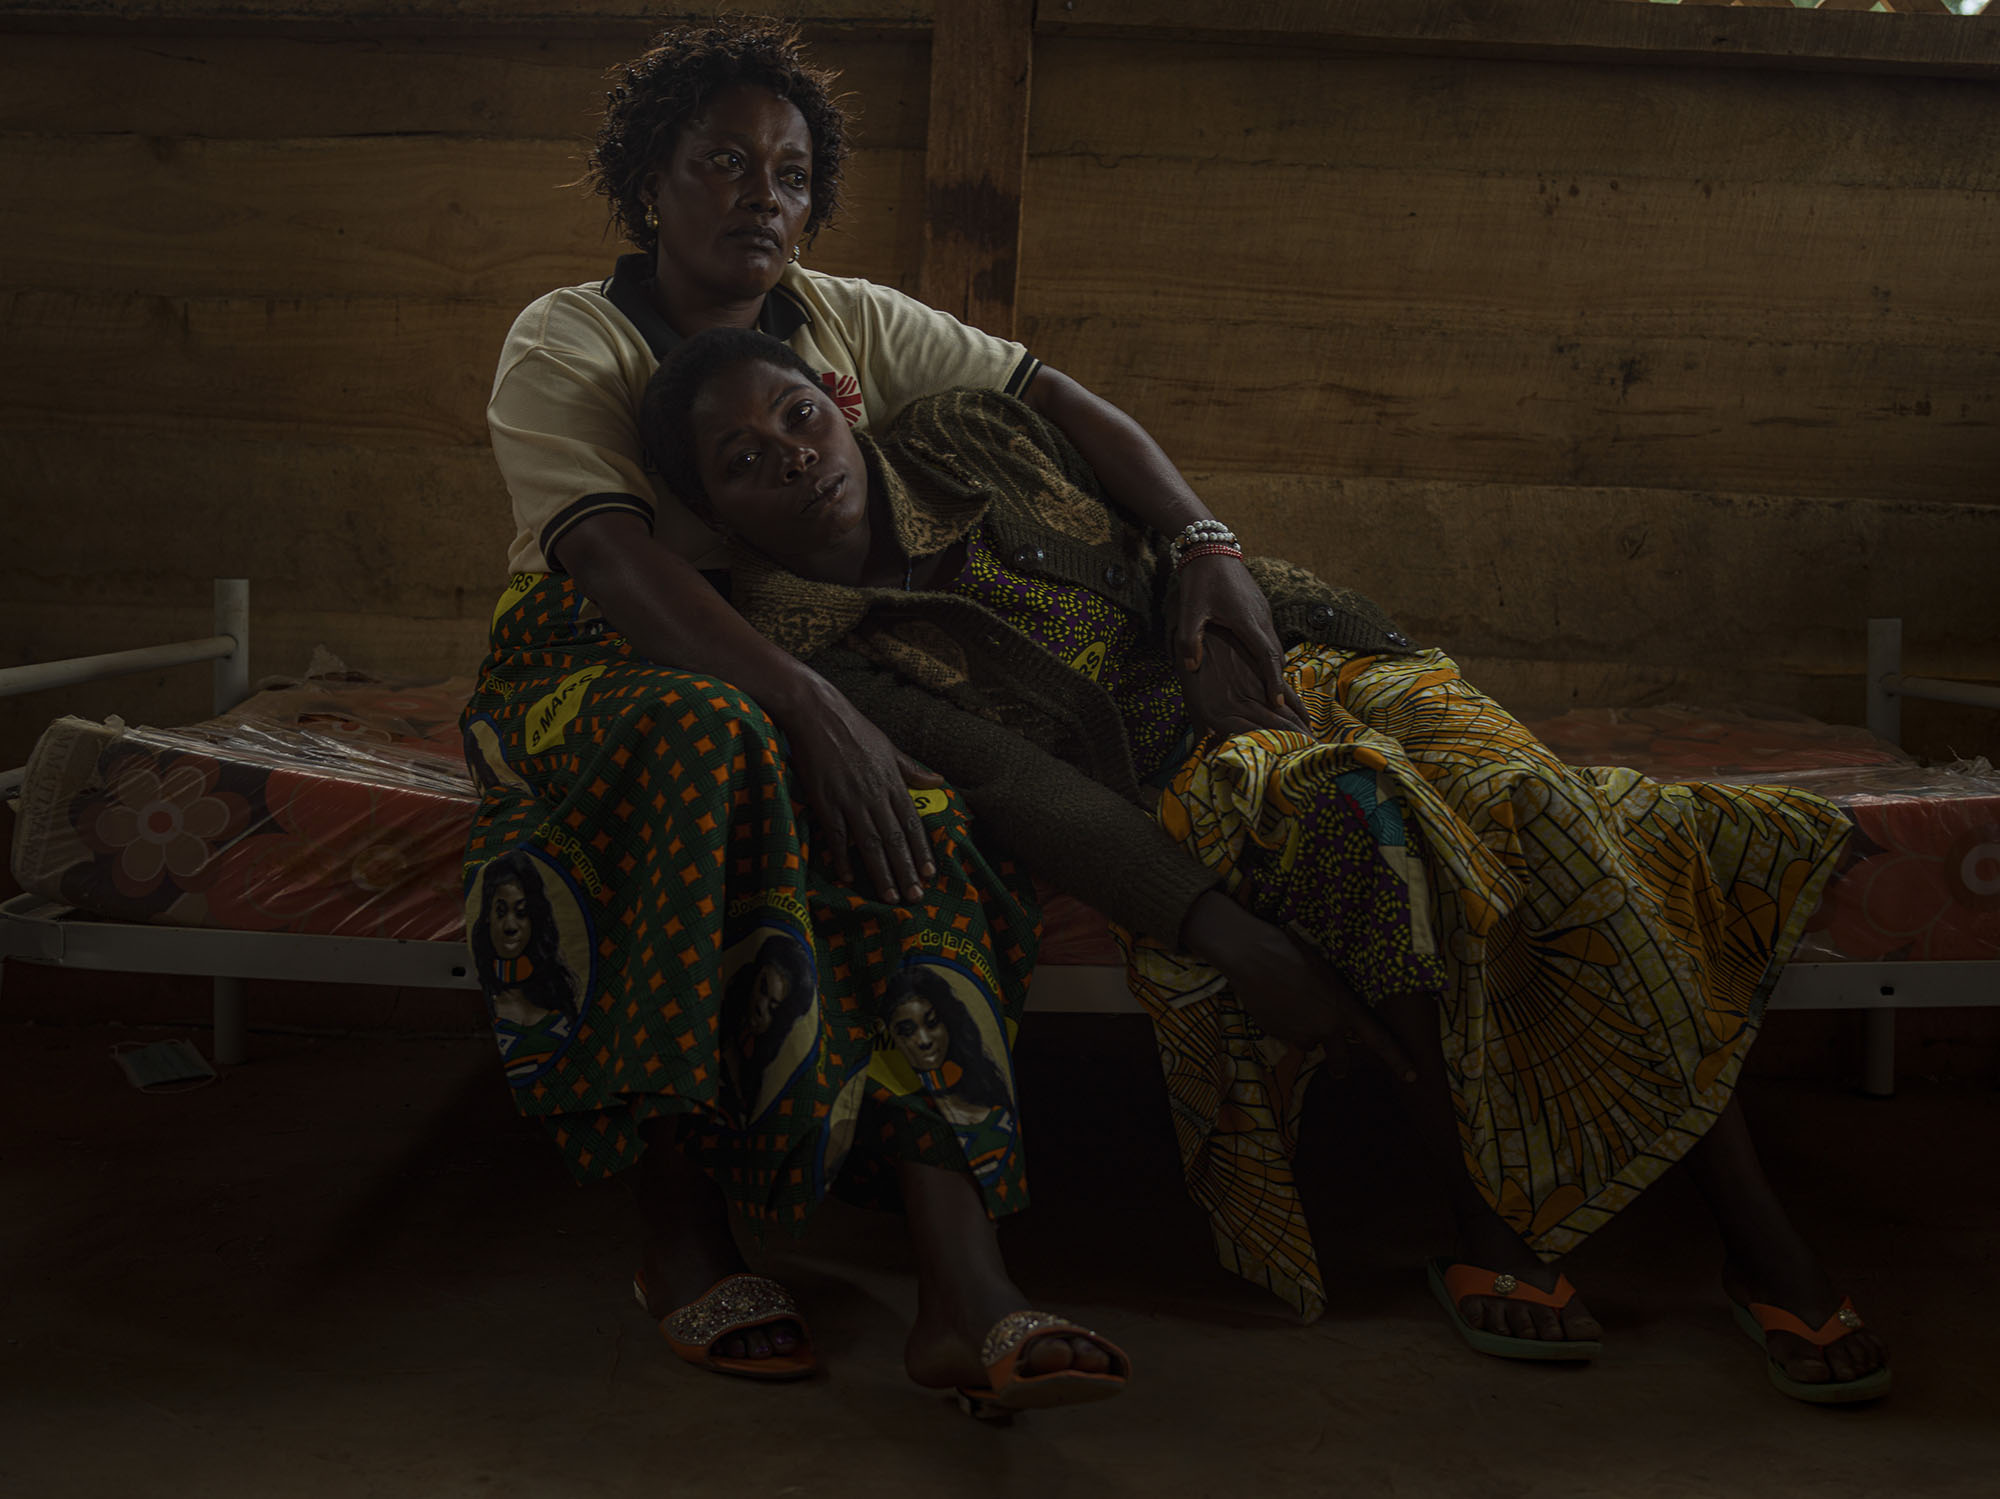 恩札樂（Nzale），30 歲，靠在歐諾琳的腿上。歐諾琳，48 歲，是負責為性侵受害者提供初步醫療並給予她們心理支持的照護員。恩札樂是在為她的七個孩子採買食物的路上遭幾個叛軍強暴，她拿不出那些逞兇者向她索要的錢財。